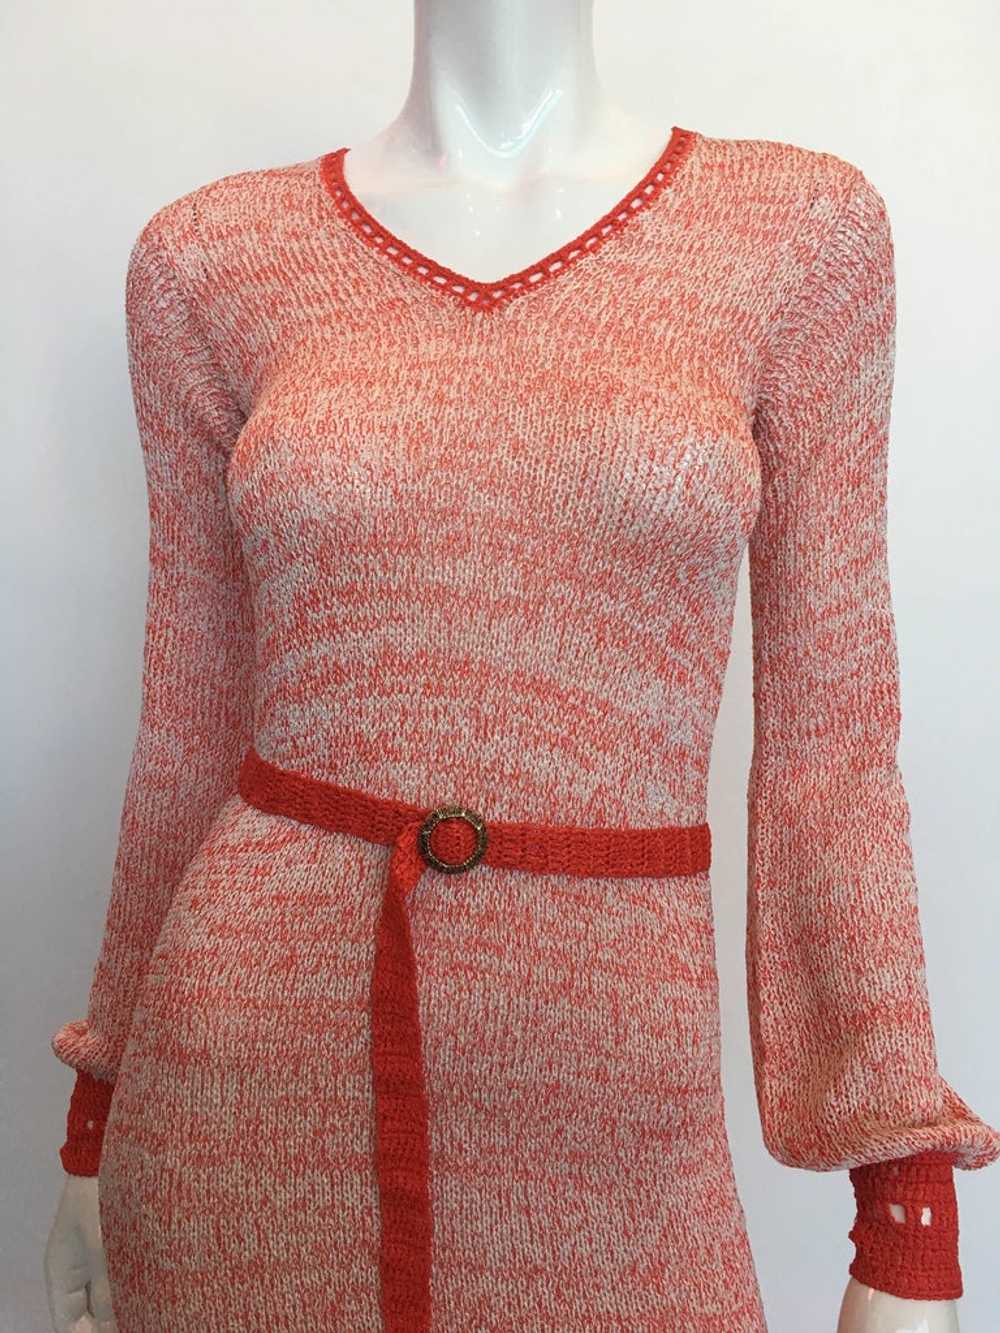 Helga Howie 1970's Knit Space Dye Dress - image 2